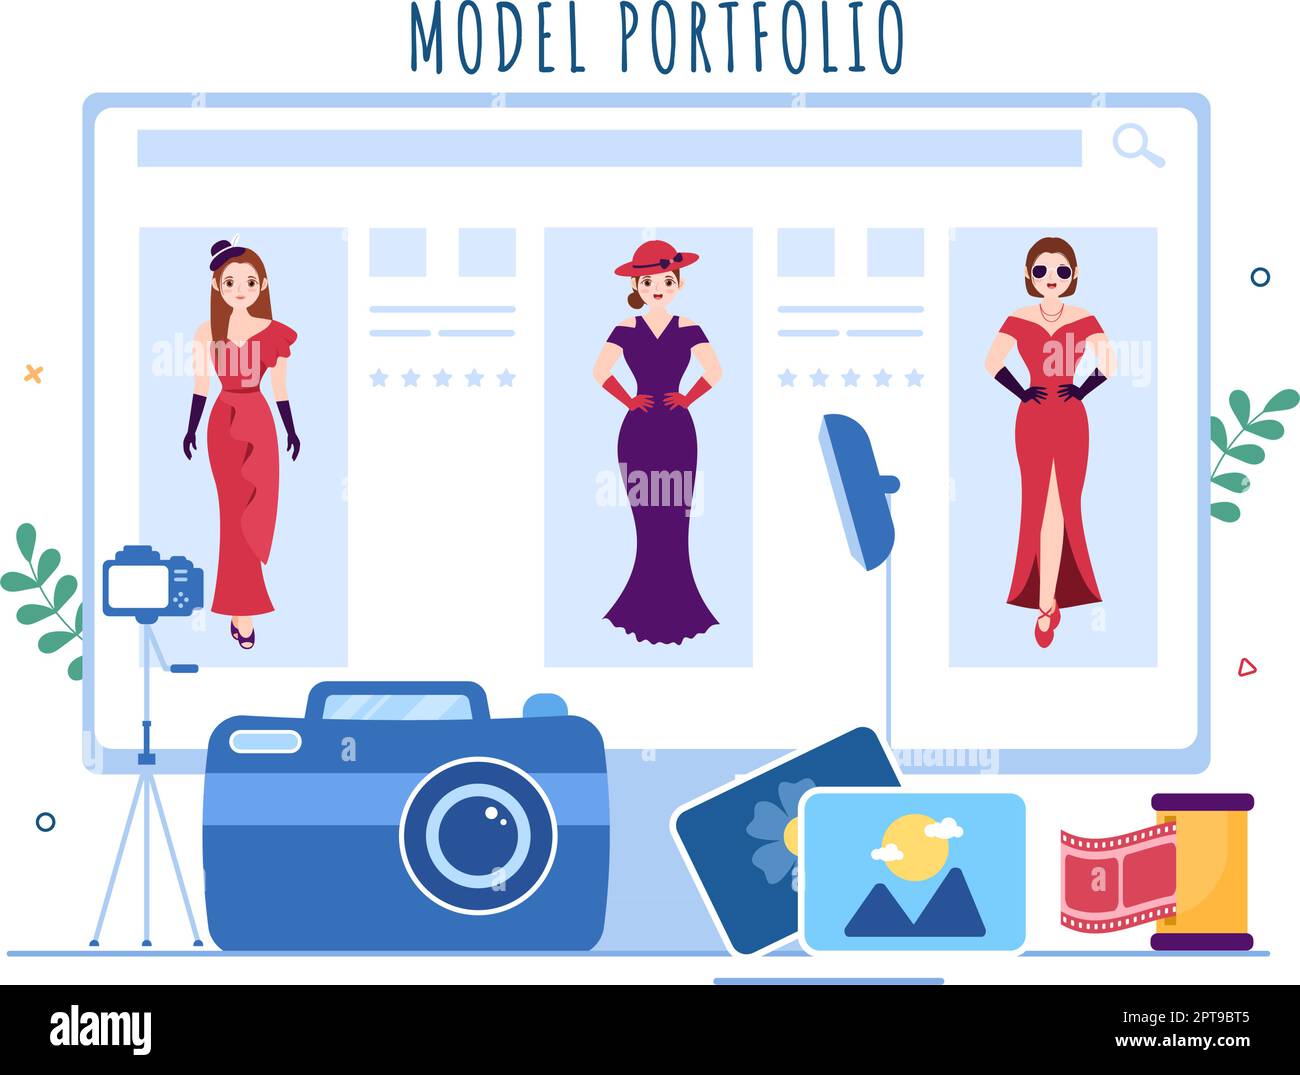 Model Portfolio Template Handgezeichnete Cartoon Flat Illustration mit Manager der Modeling Agency und Fotograf machen Fotos von Model in Platform Design Stock Vektor